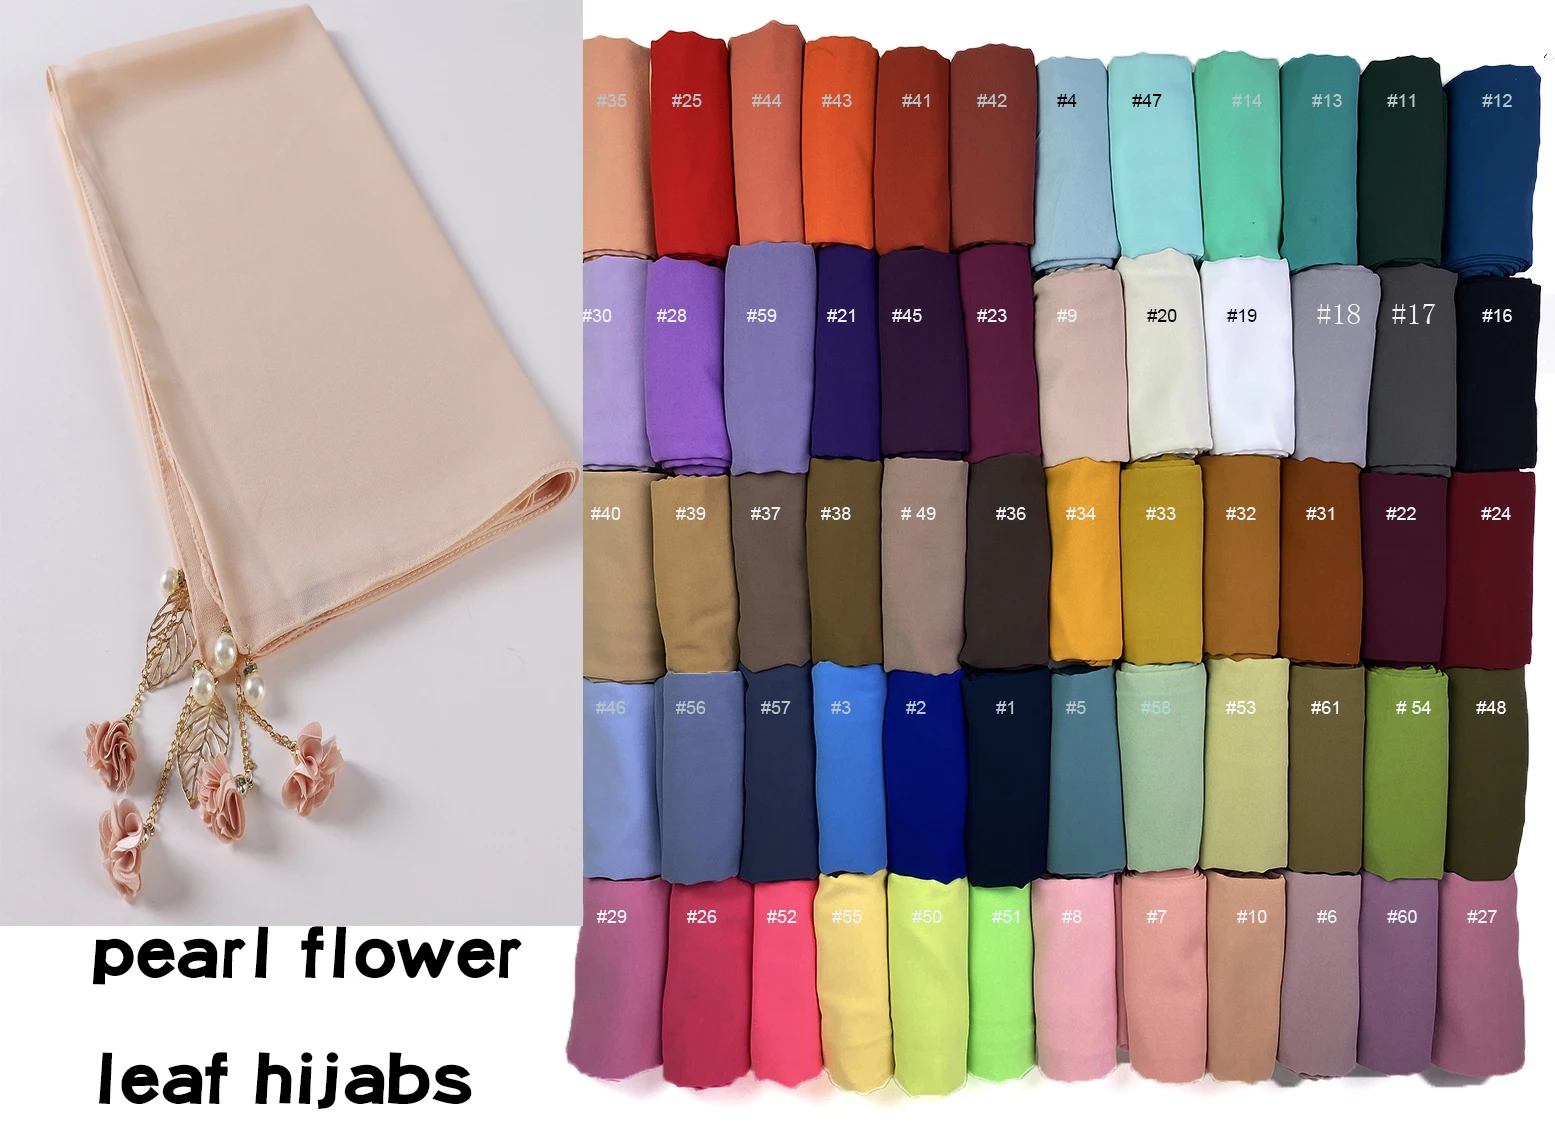 Premium Chiffon Custom Hijab Leaf Flower Pendant Tassel Muslim Headscarf Shawl and Wrap Islamic Female Foulard Turbante Stoles